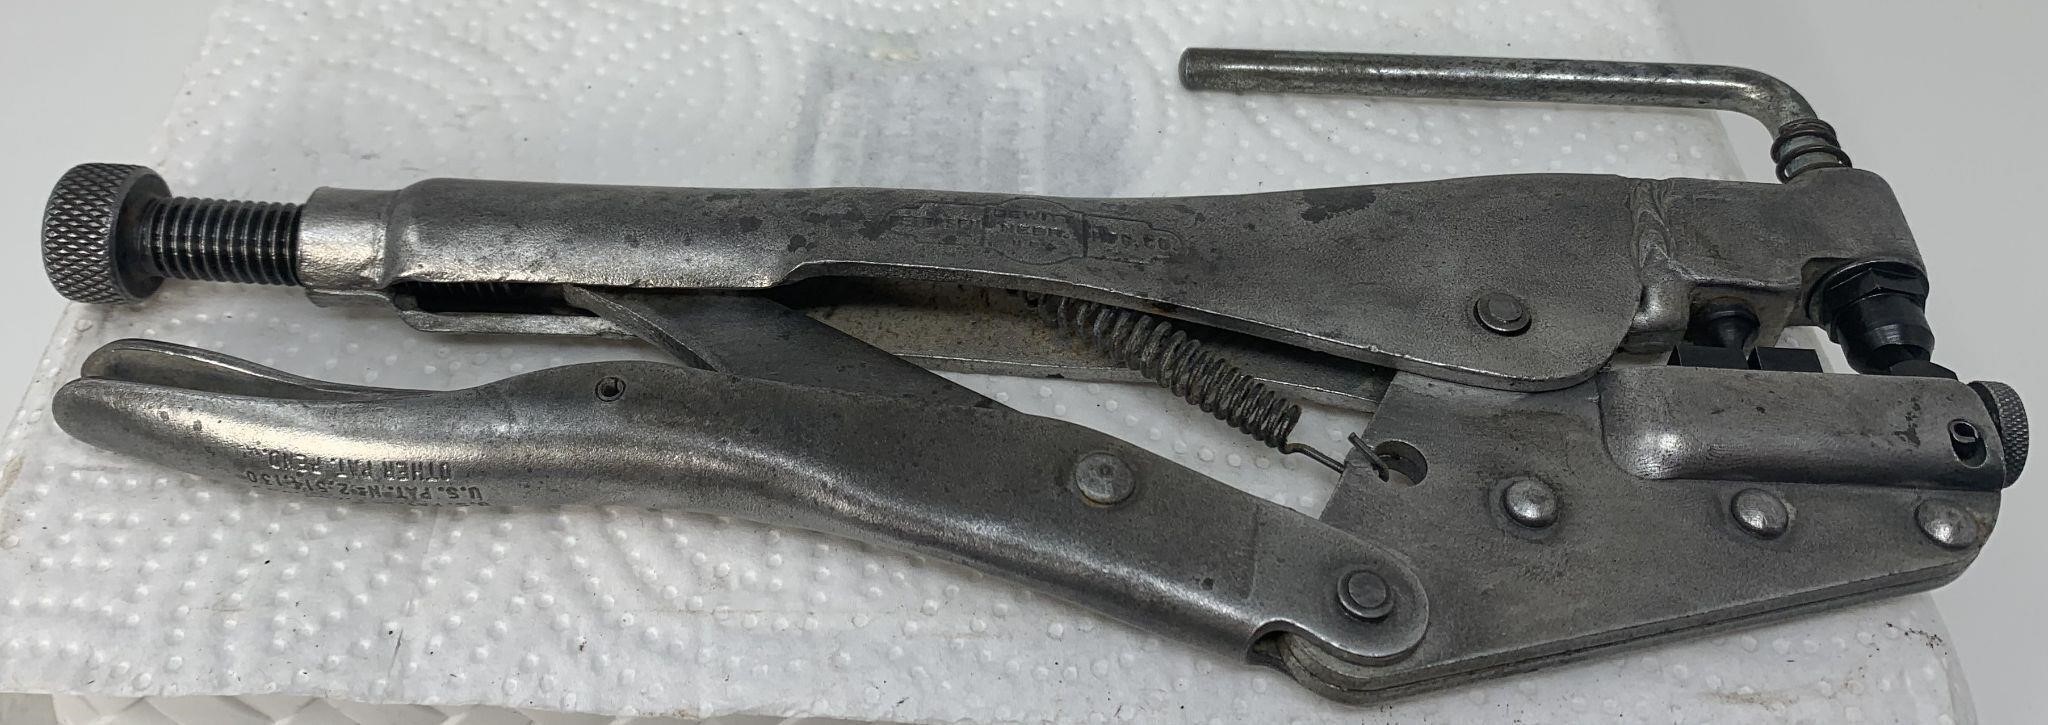 Vicegrip Chainsaw Repair Tool